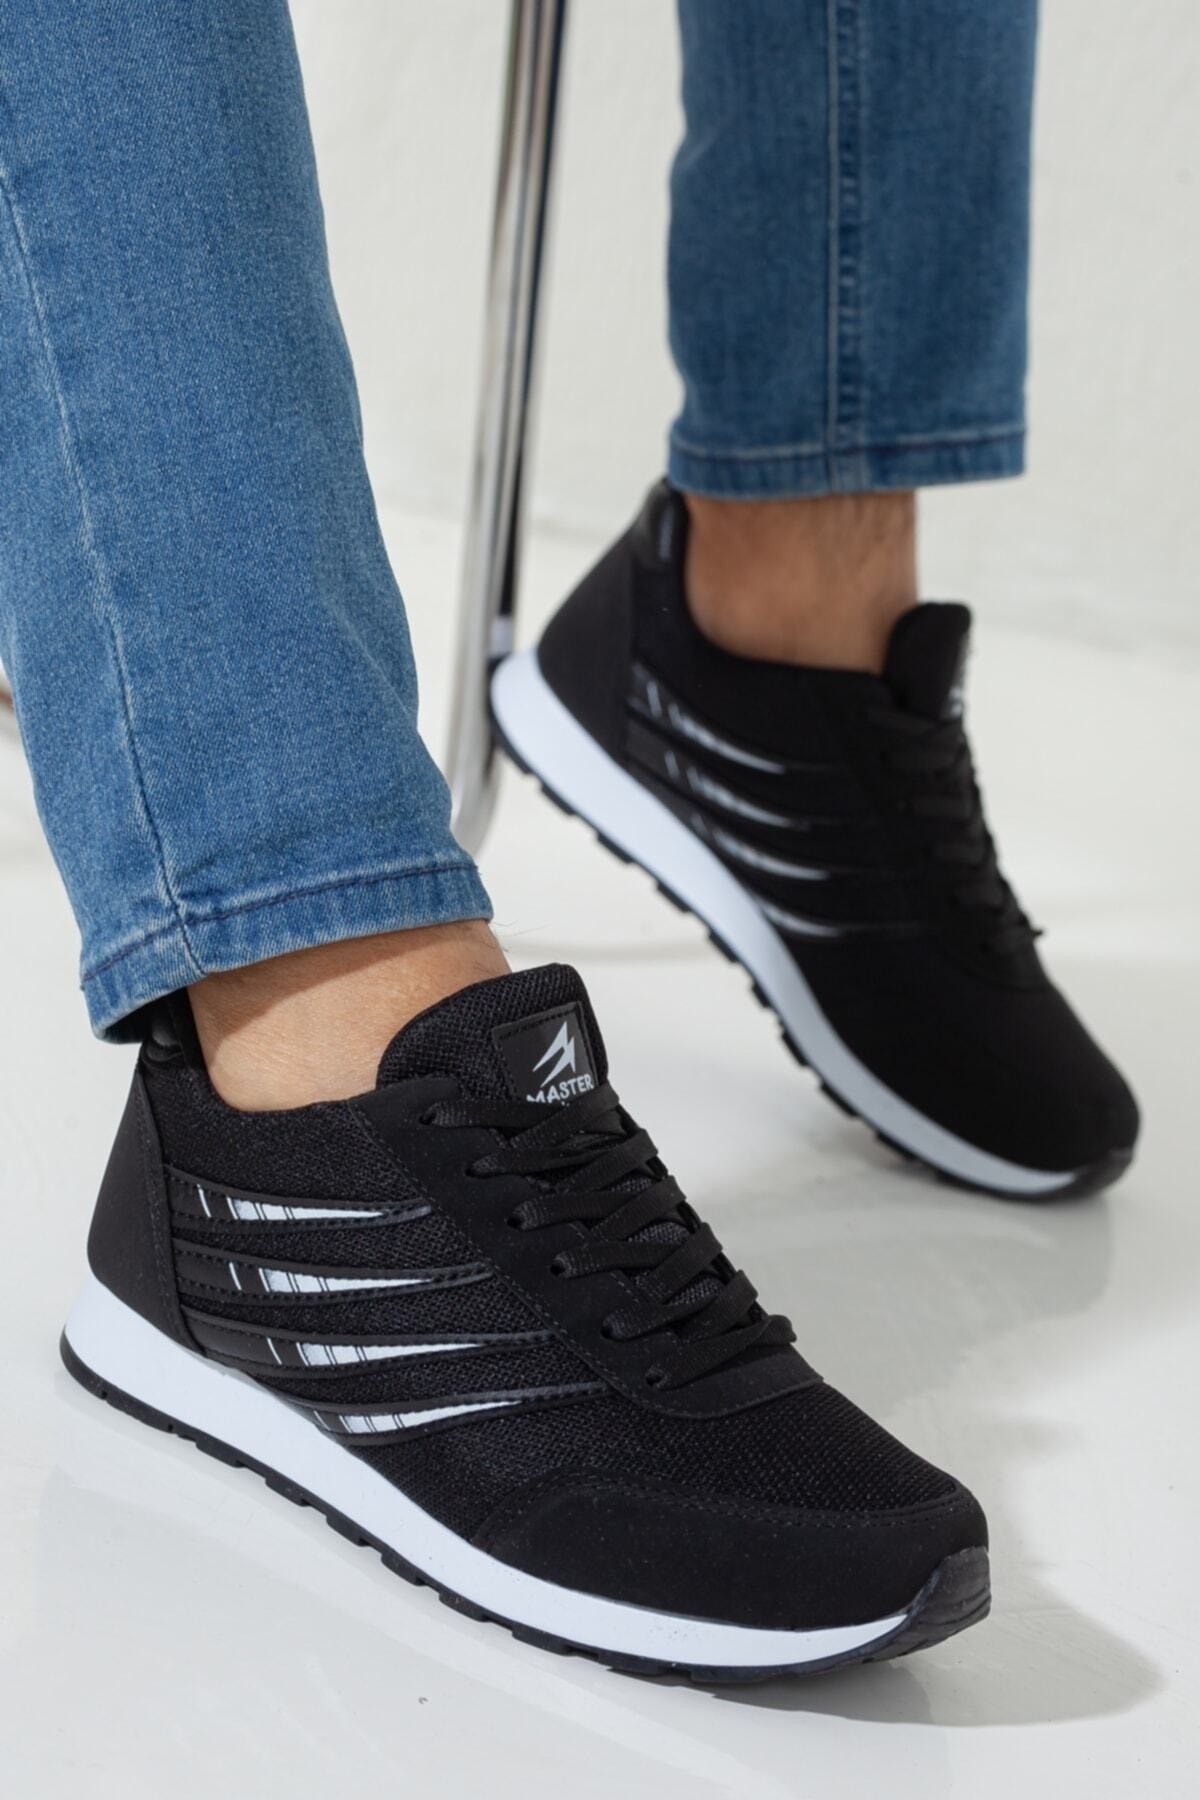 Rona Gifts Erkek Siyah Beyaz Bağcıklı Düz Taban Fileli Şeritli Erkek Sneaker Ayakkabı Şık Lüks Konforlu